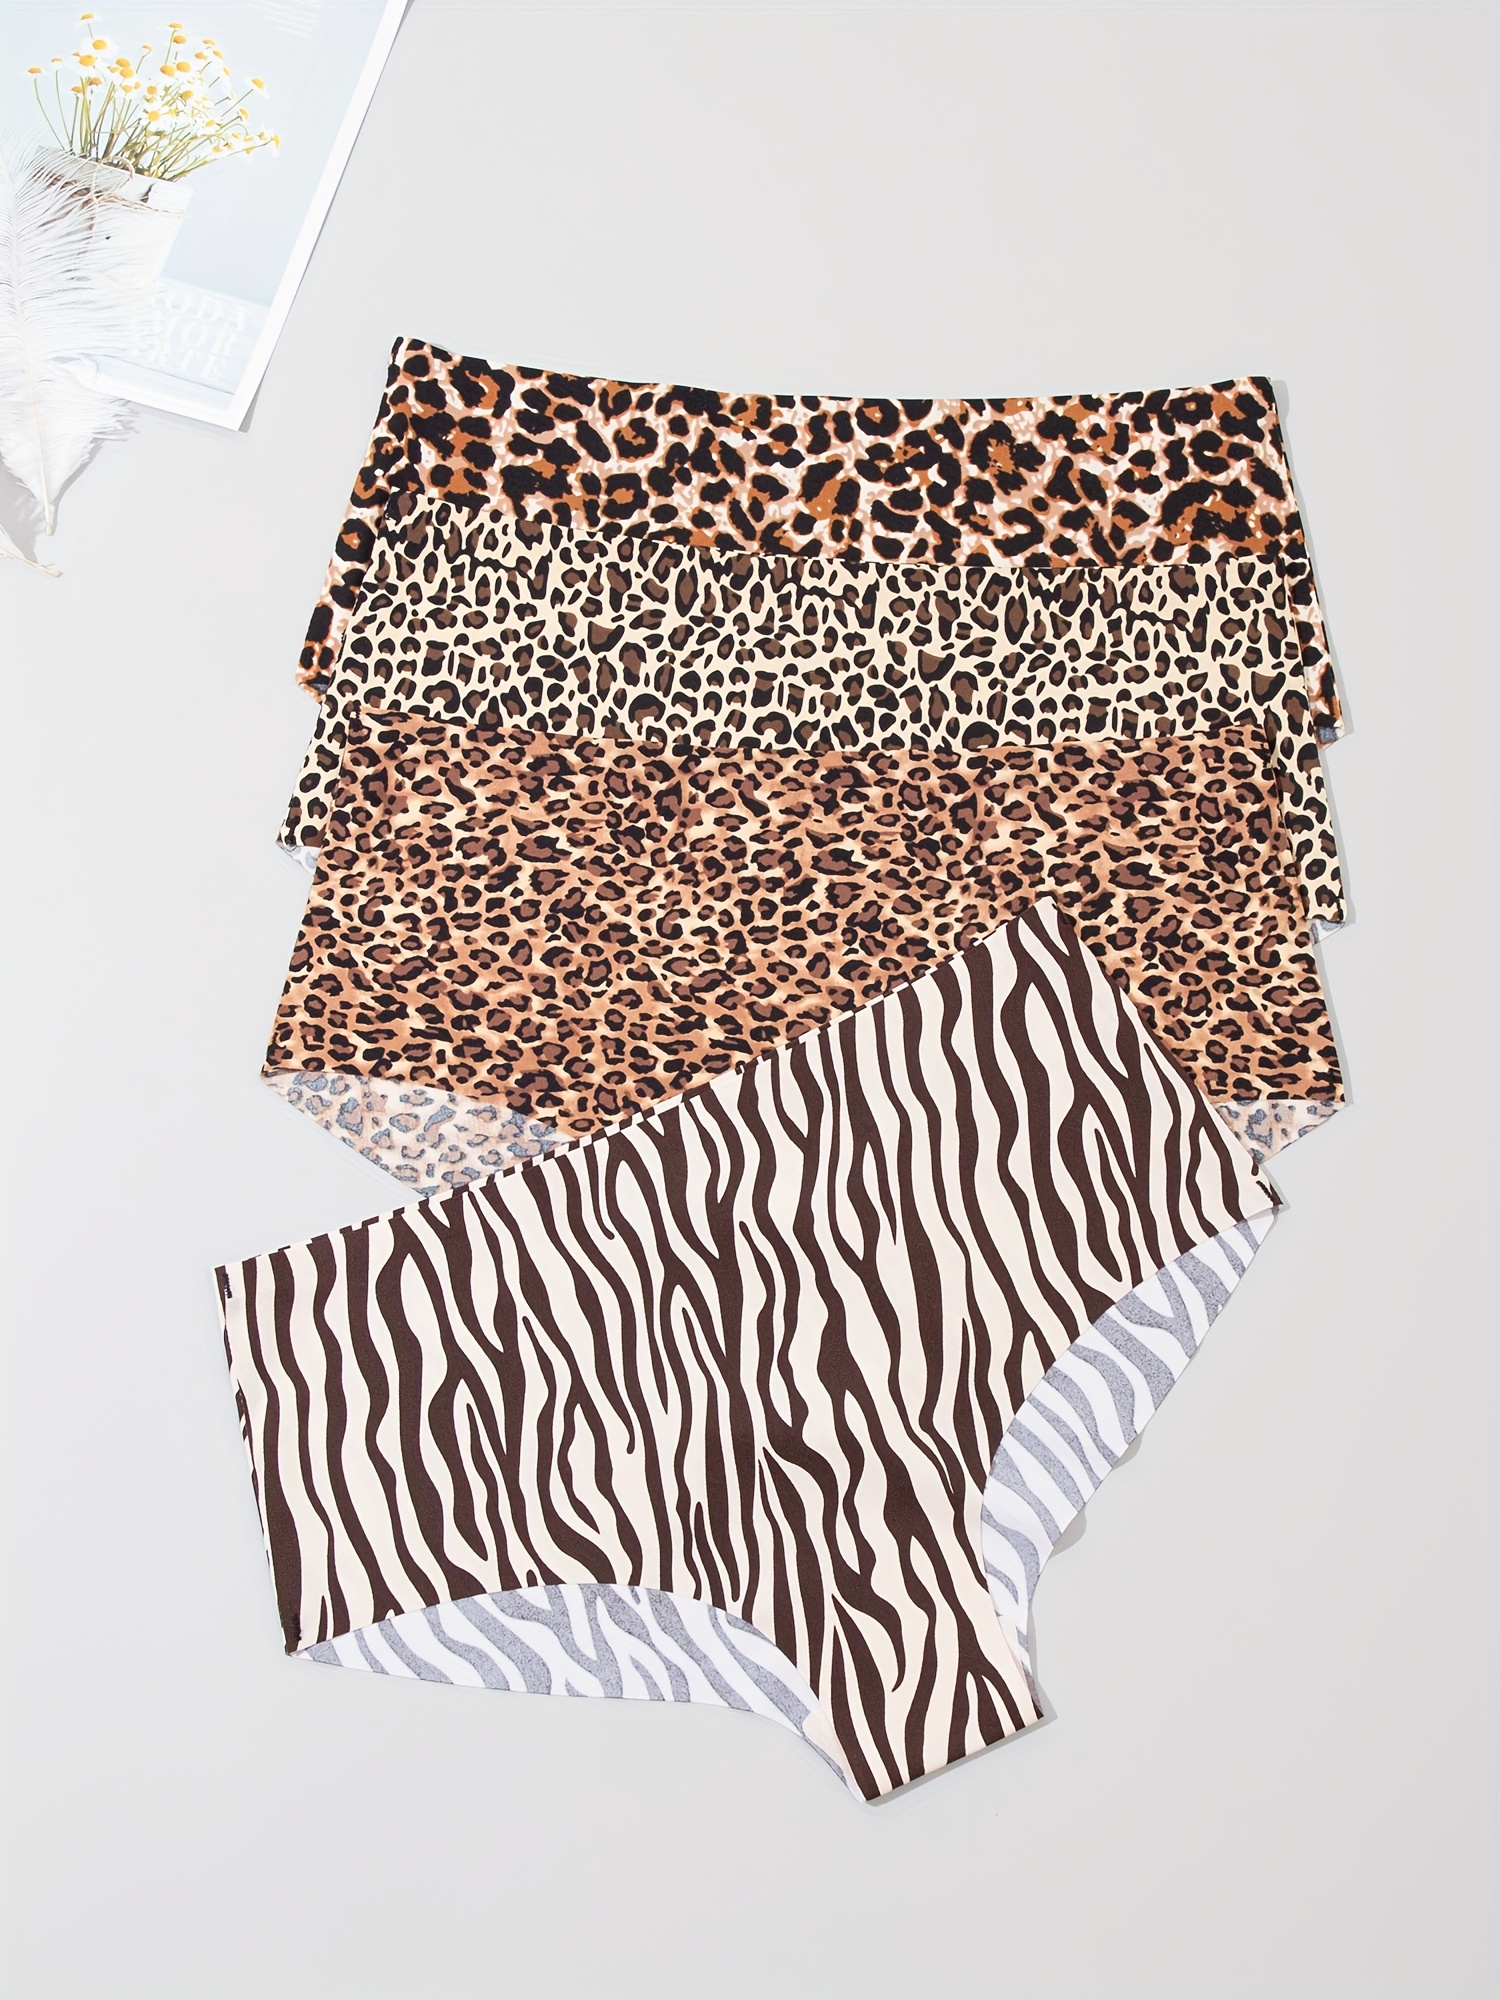 Leopard Print Panties Meaning - Temu